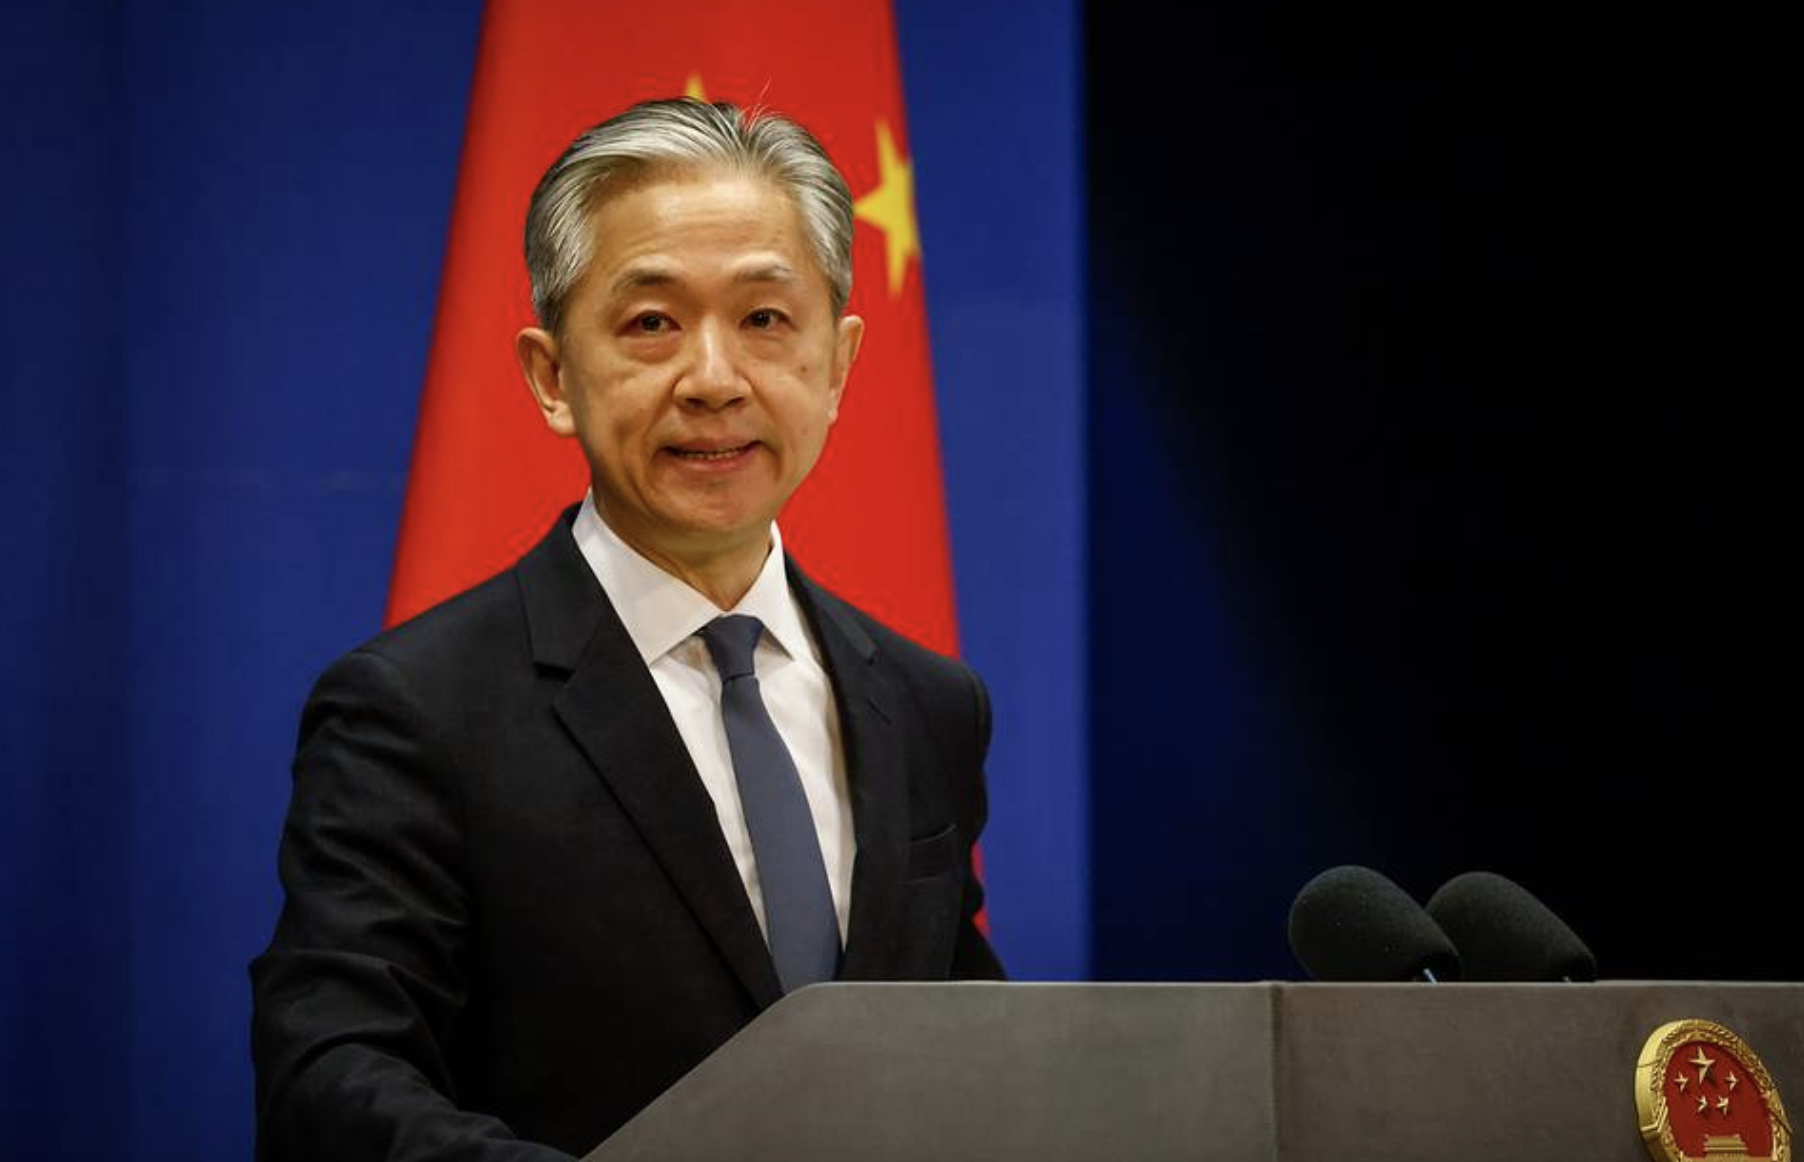 La Cina: "La sicurezza europea non si garantisce espandendo i blocchi militari"